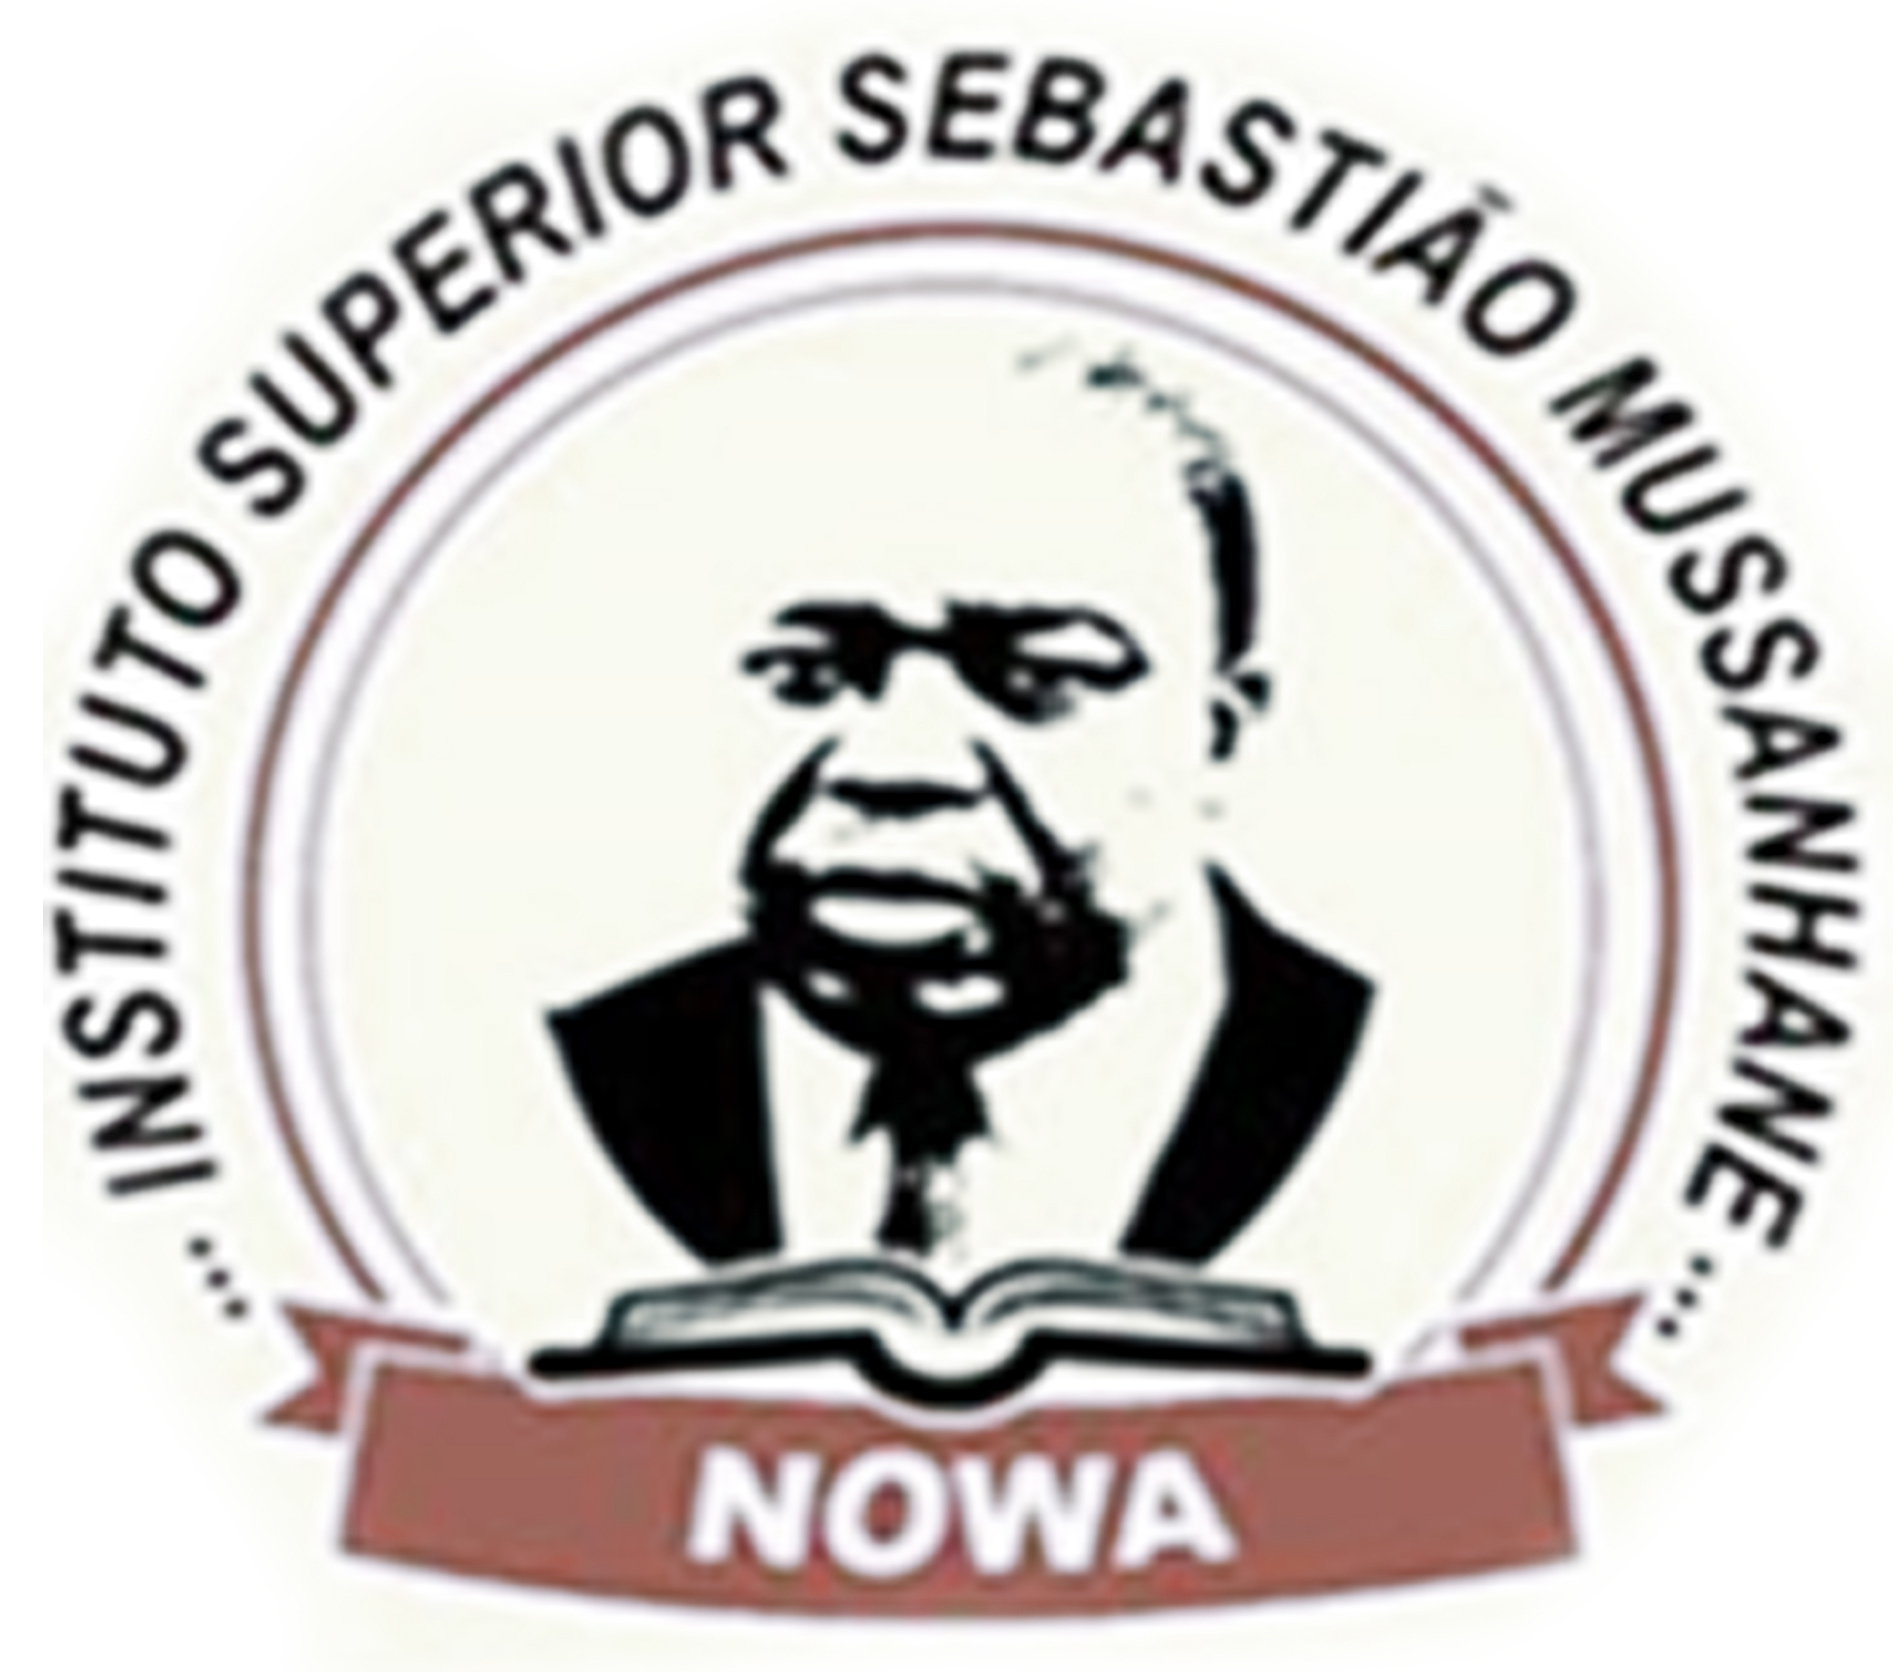 Nowa - Instituto Superior Sebastião Mussanhane